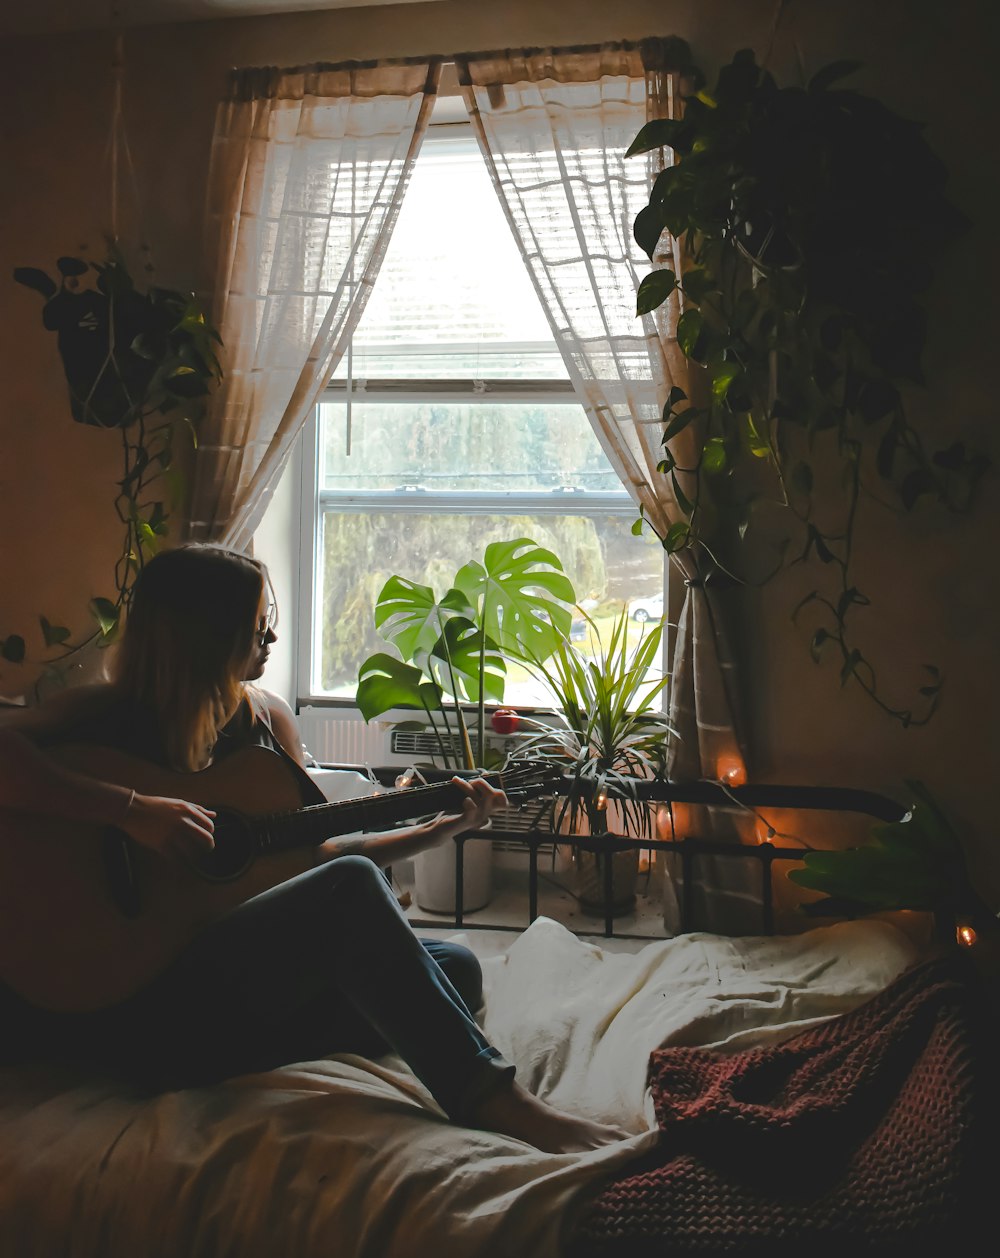 Una mujer sentada en una cama tocando una guitarra